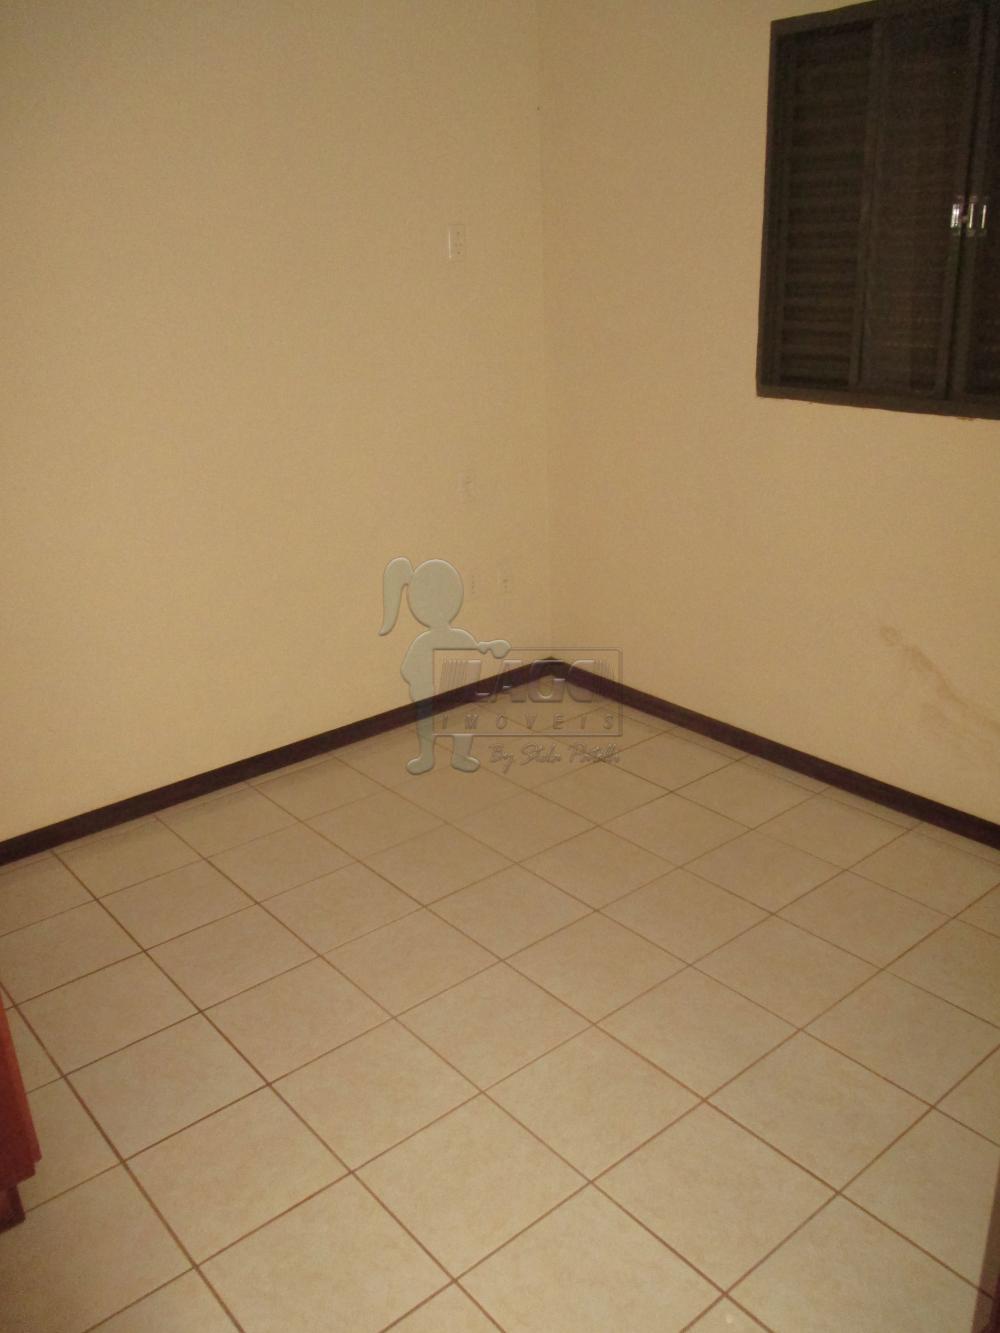 Alugar Apartamentos / Padrão em Ribeirão Preto R$ 650,00 - Foto 6